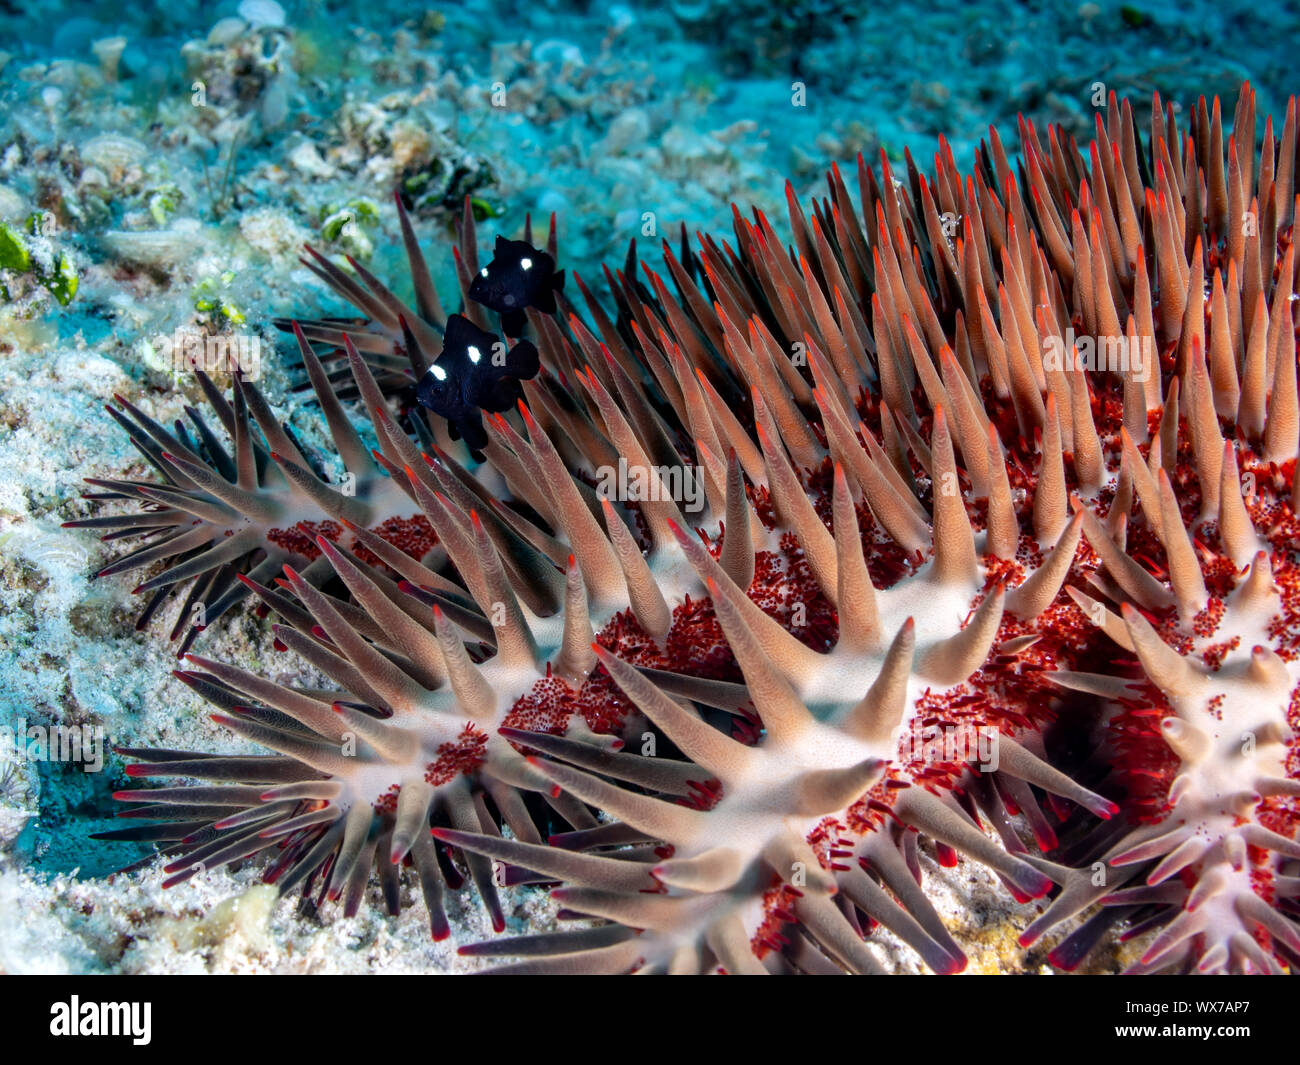 Crown-of-thorns starfish Stock Photo